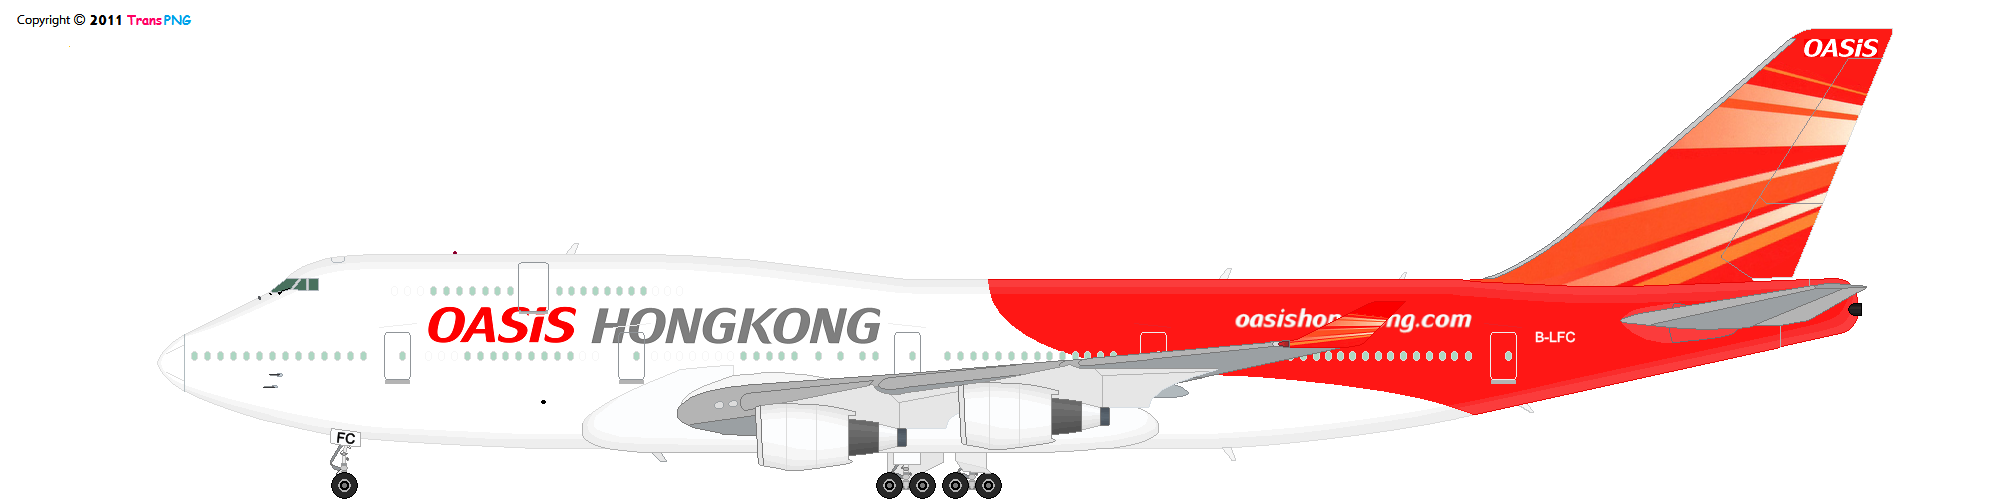 TransPNG.net | 分享世界各地多種交通工具的優秀繪圖 - 飛機 52135900309_3f2f9495de_o